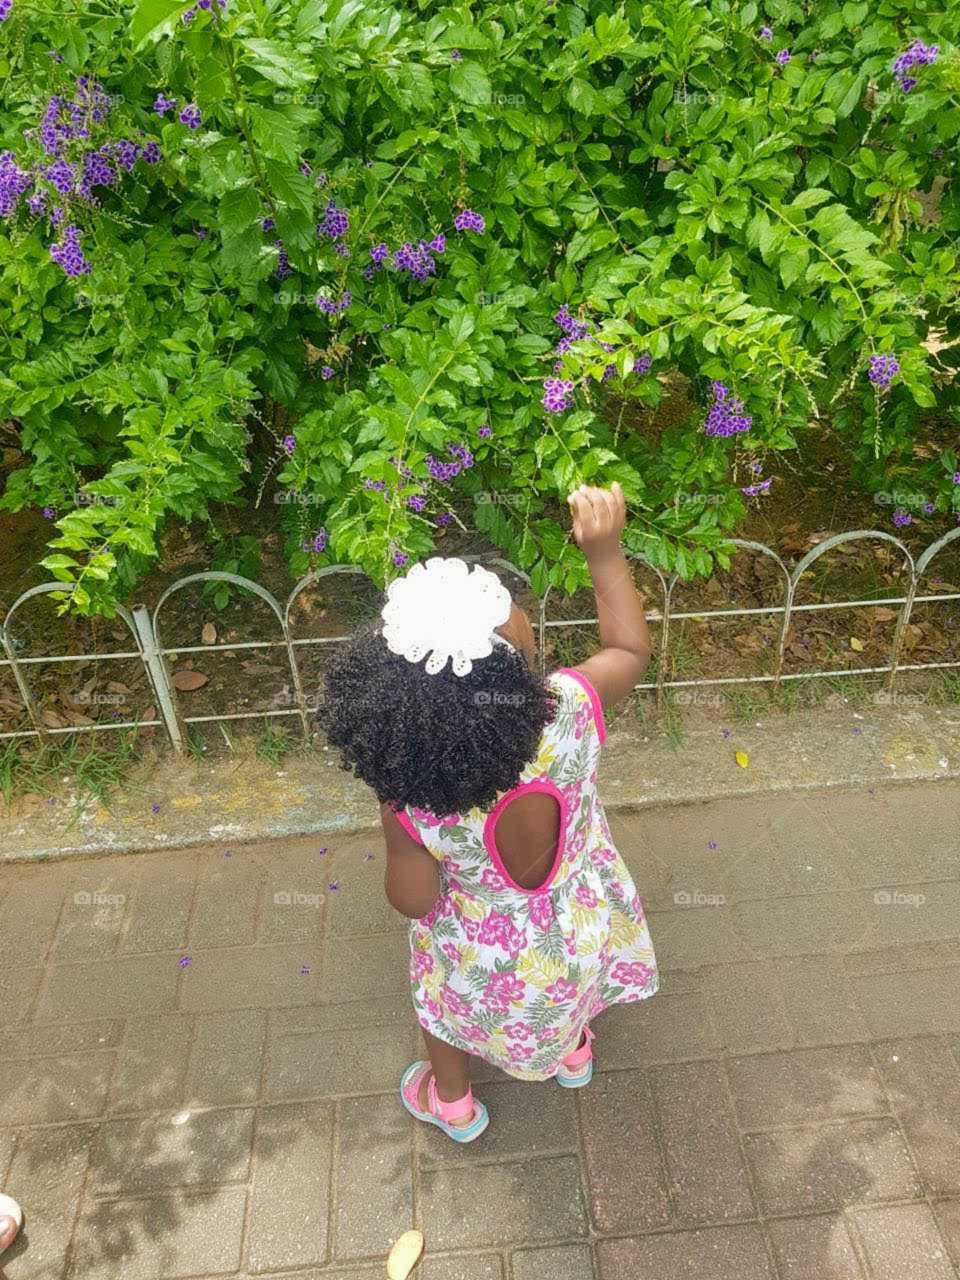 Menina brincando com flores, em um parque.